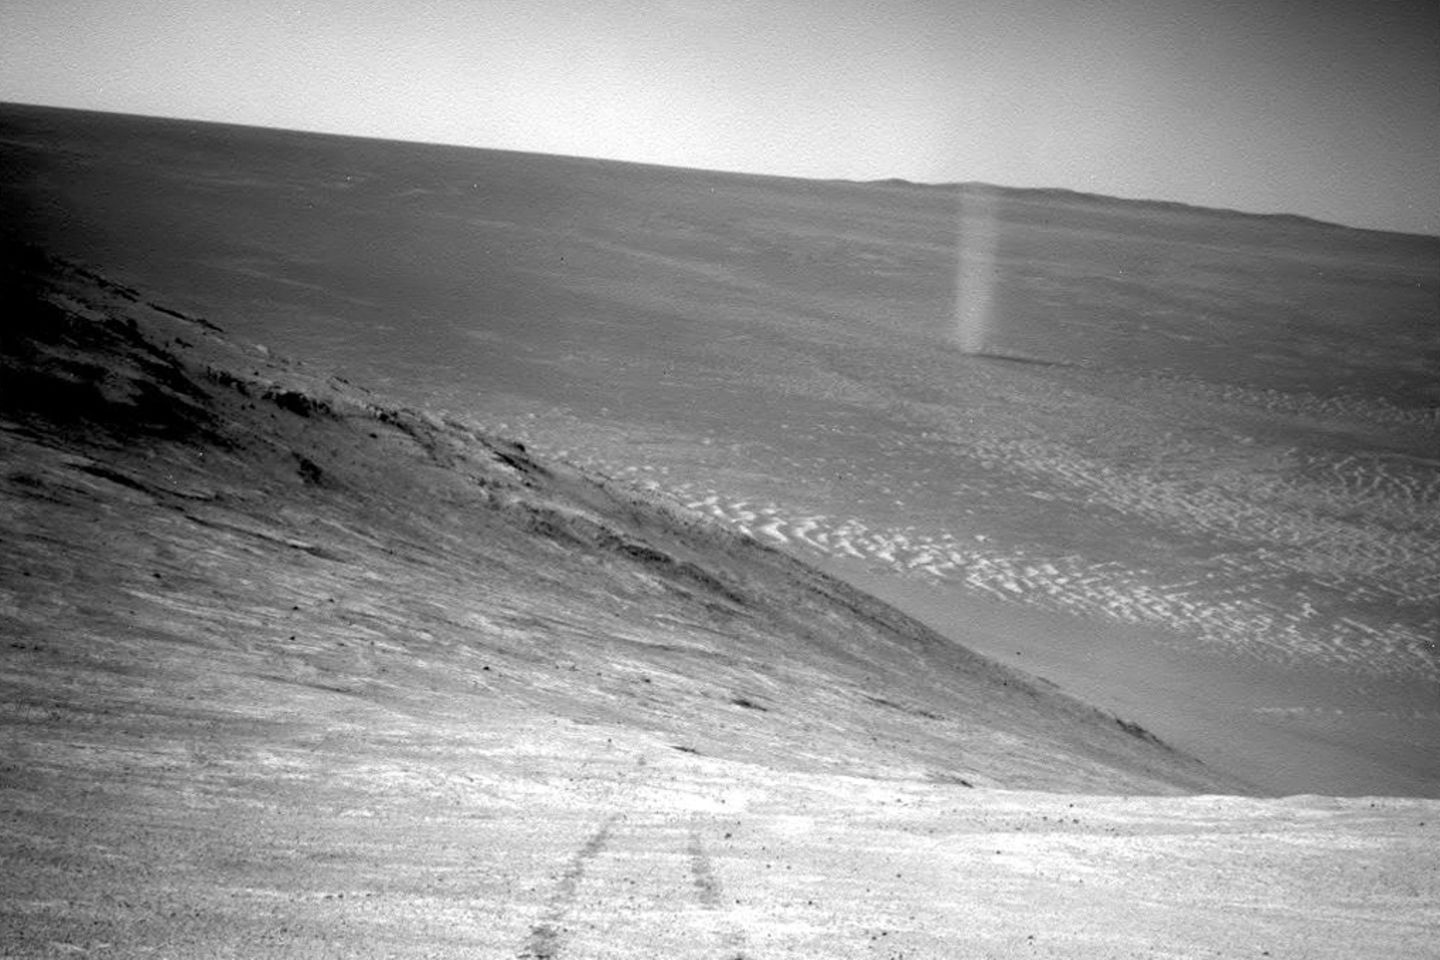 Ein sogenannter Staubteufel (im Bild rechts oben) fegt über die Mars-Oberfläche, aufgenommen vom Marsrover Opportunity